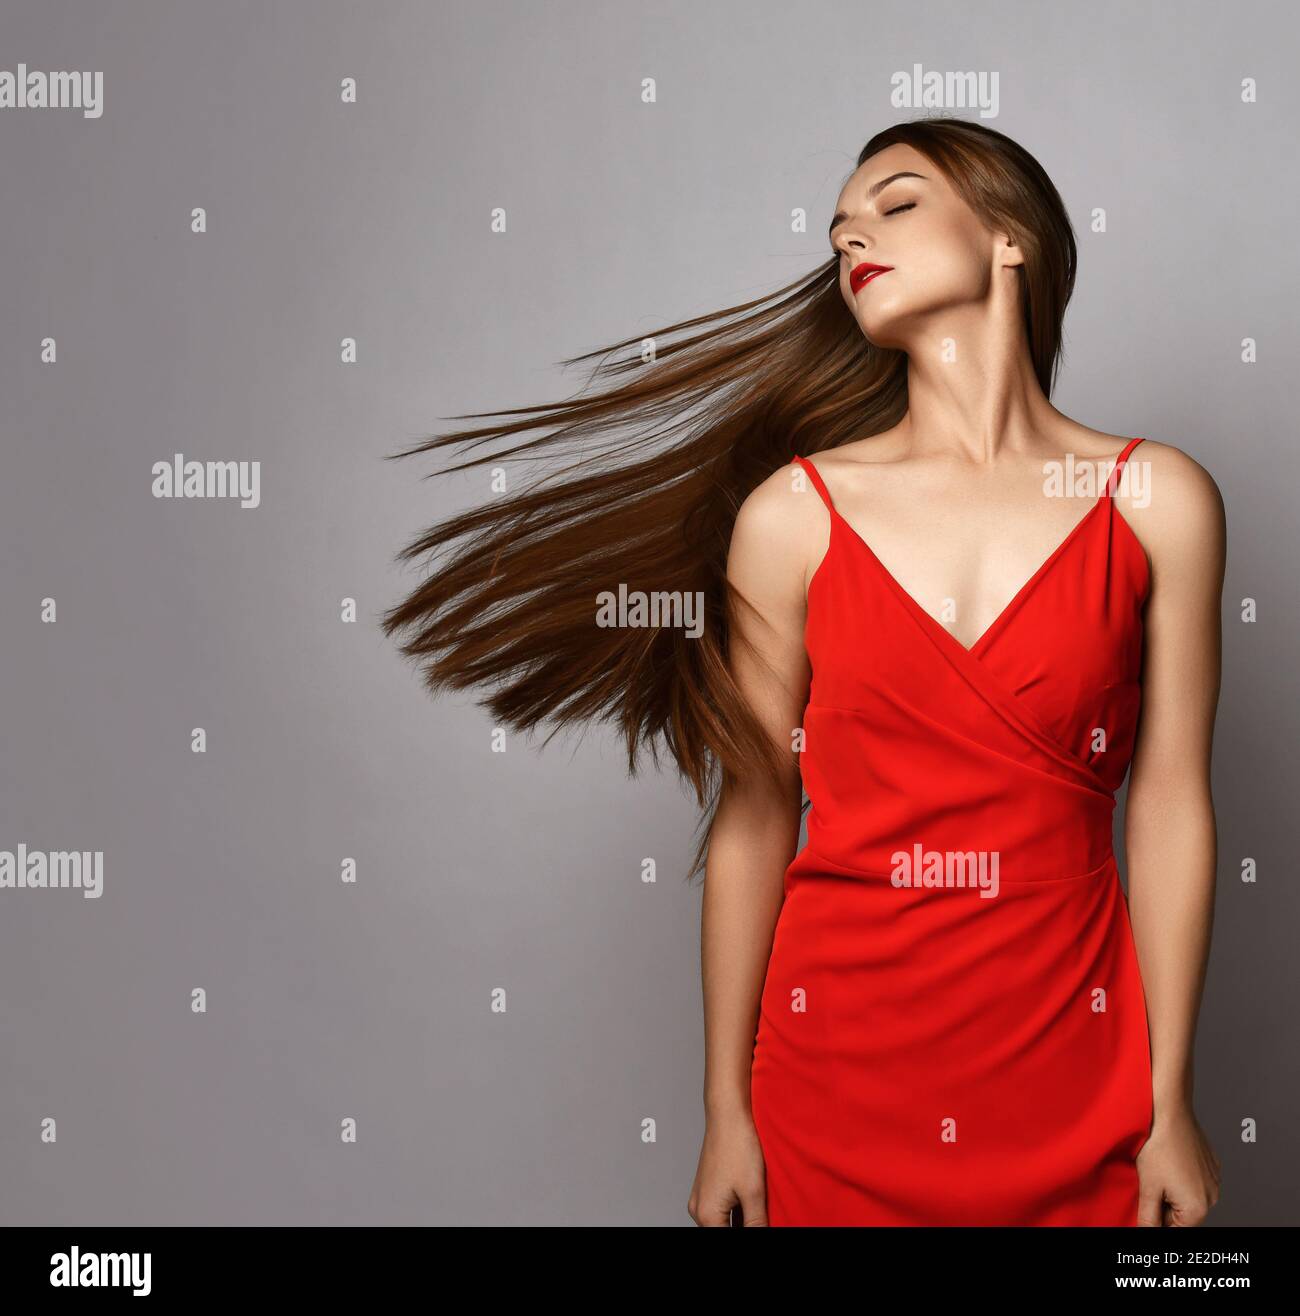 Junge Frau mit langen seidig geraden Haaren in rotem Kleid Steht schüttelnd Kopf macht ihre Haare fliegen auf Kopieplatz Stockfoto